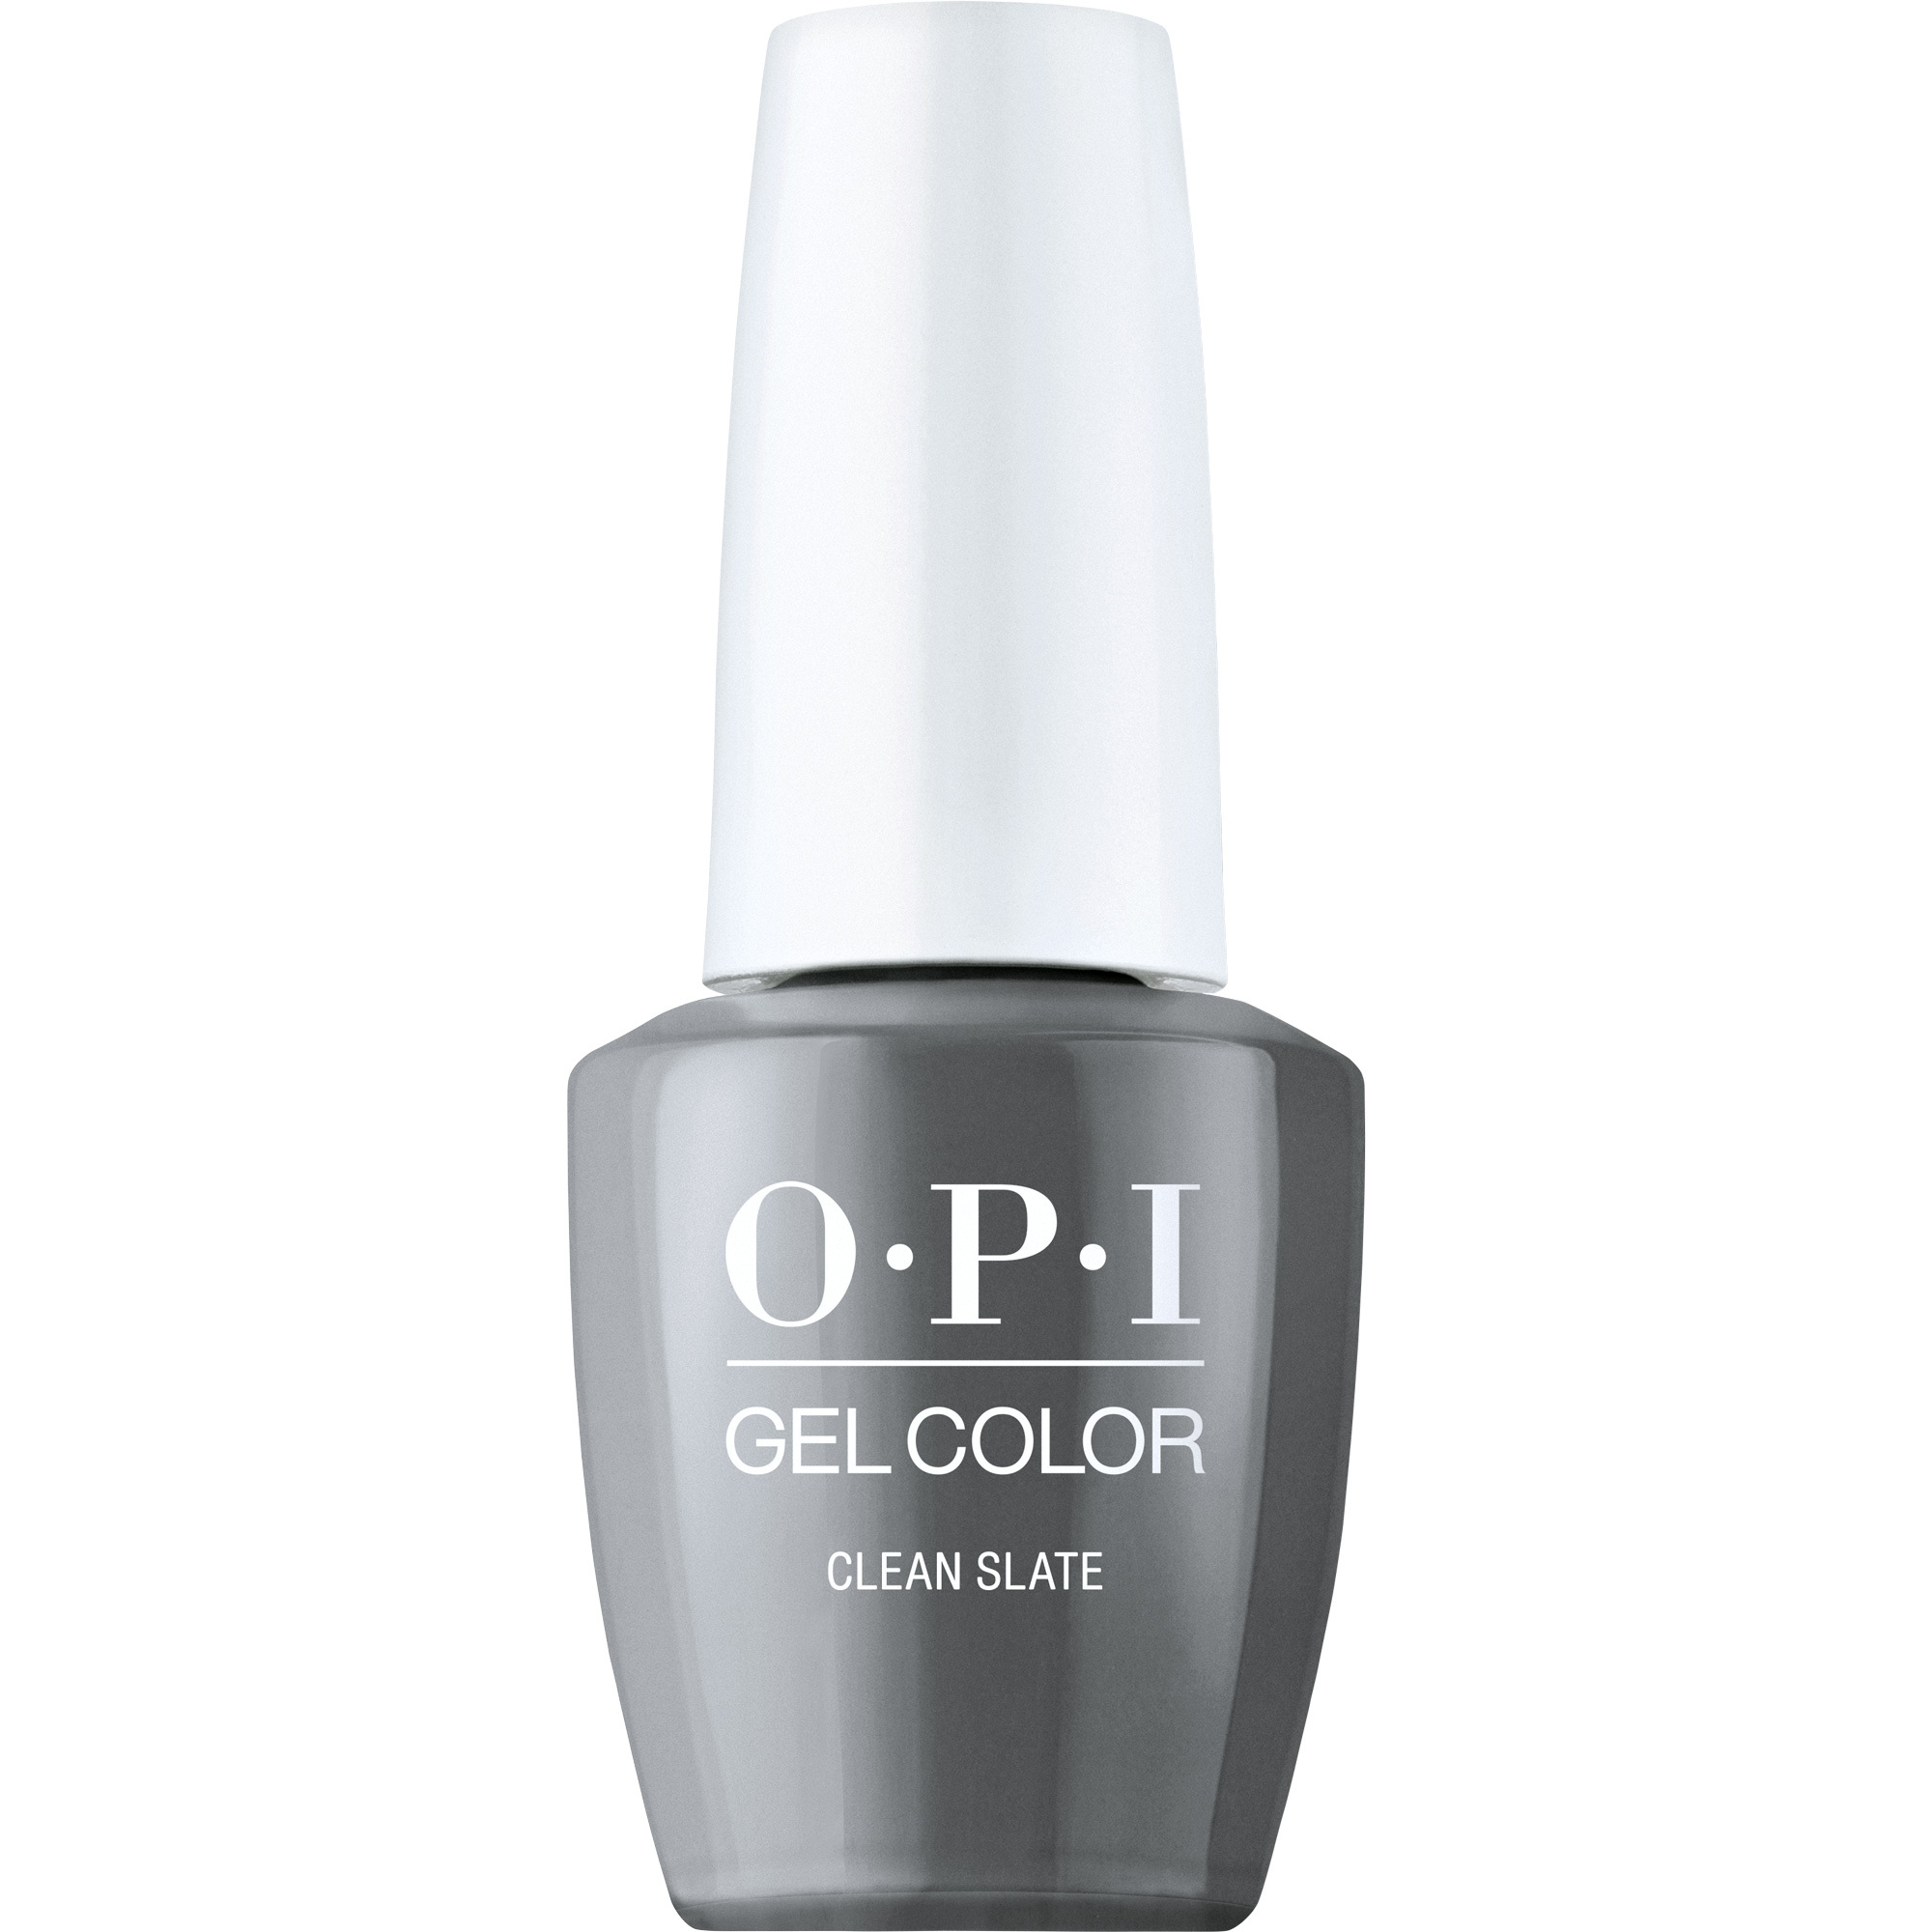 OPI Gel Color 360 - Clean Slate